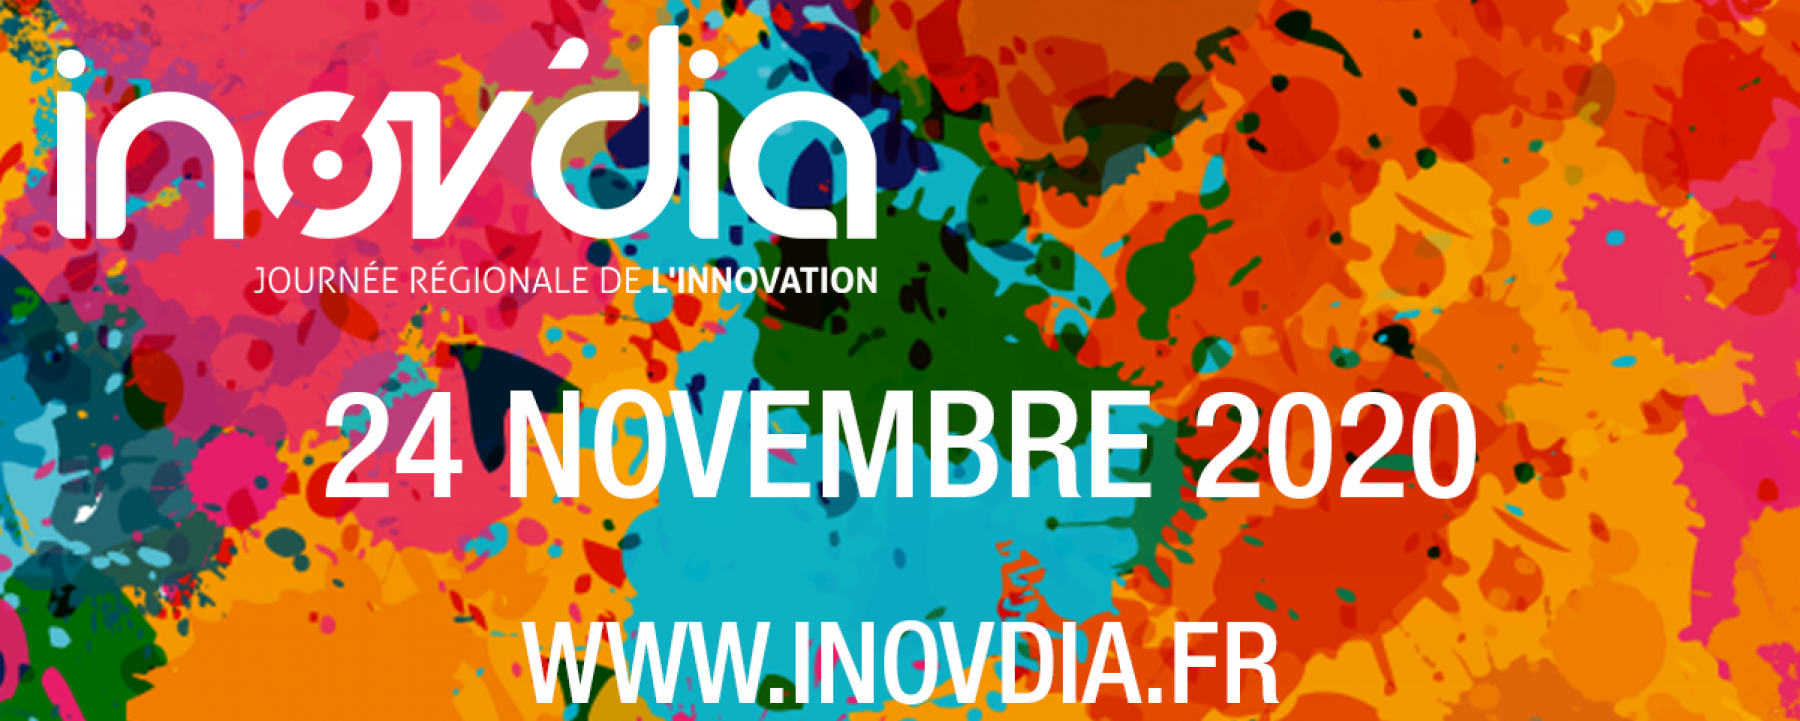 Inov'dia 2020, un événement organisé par Laval Mayenne Technopole le 24 novembre